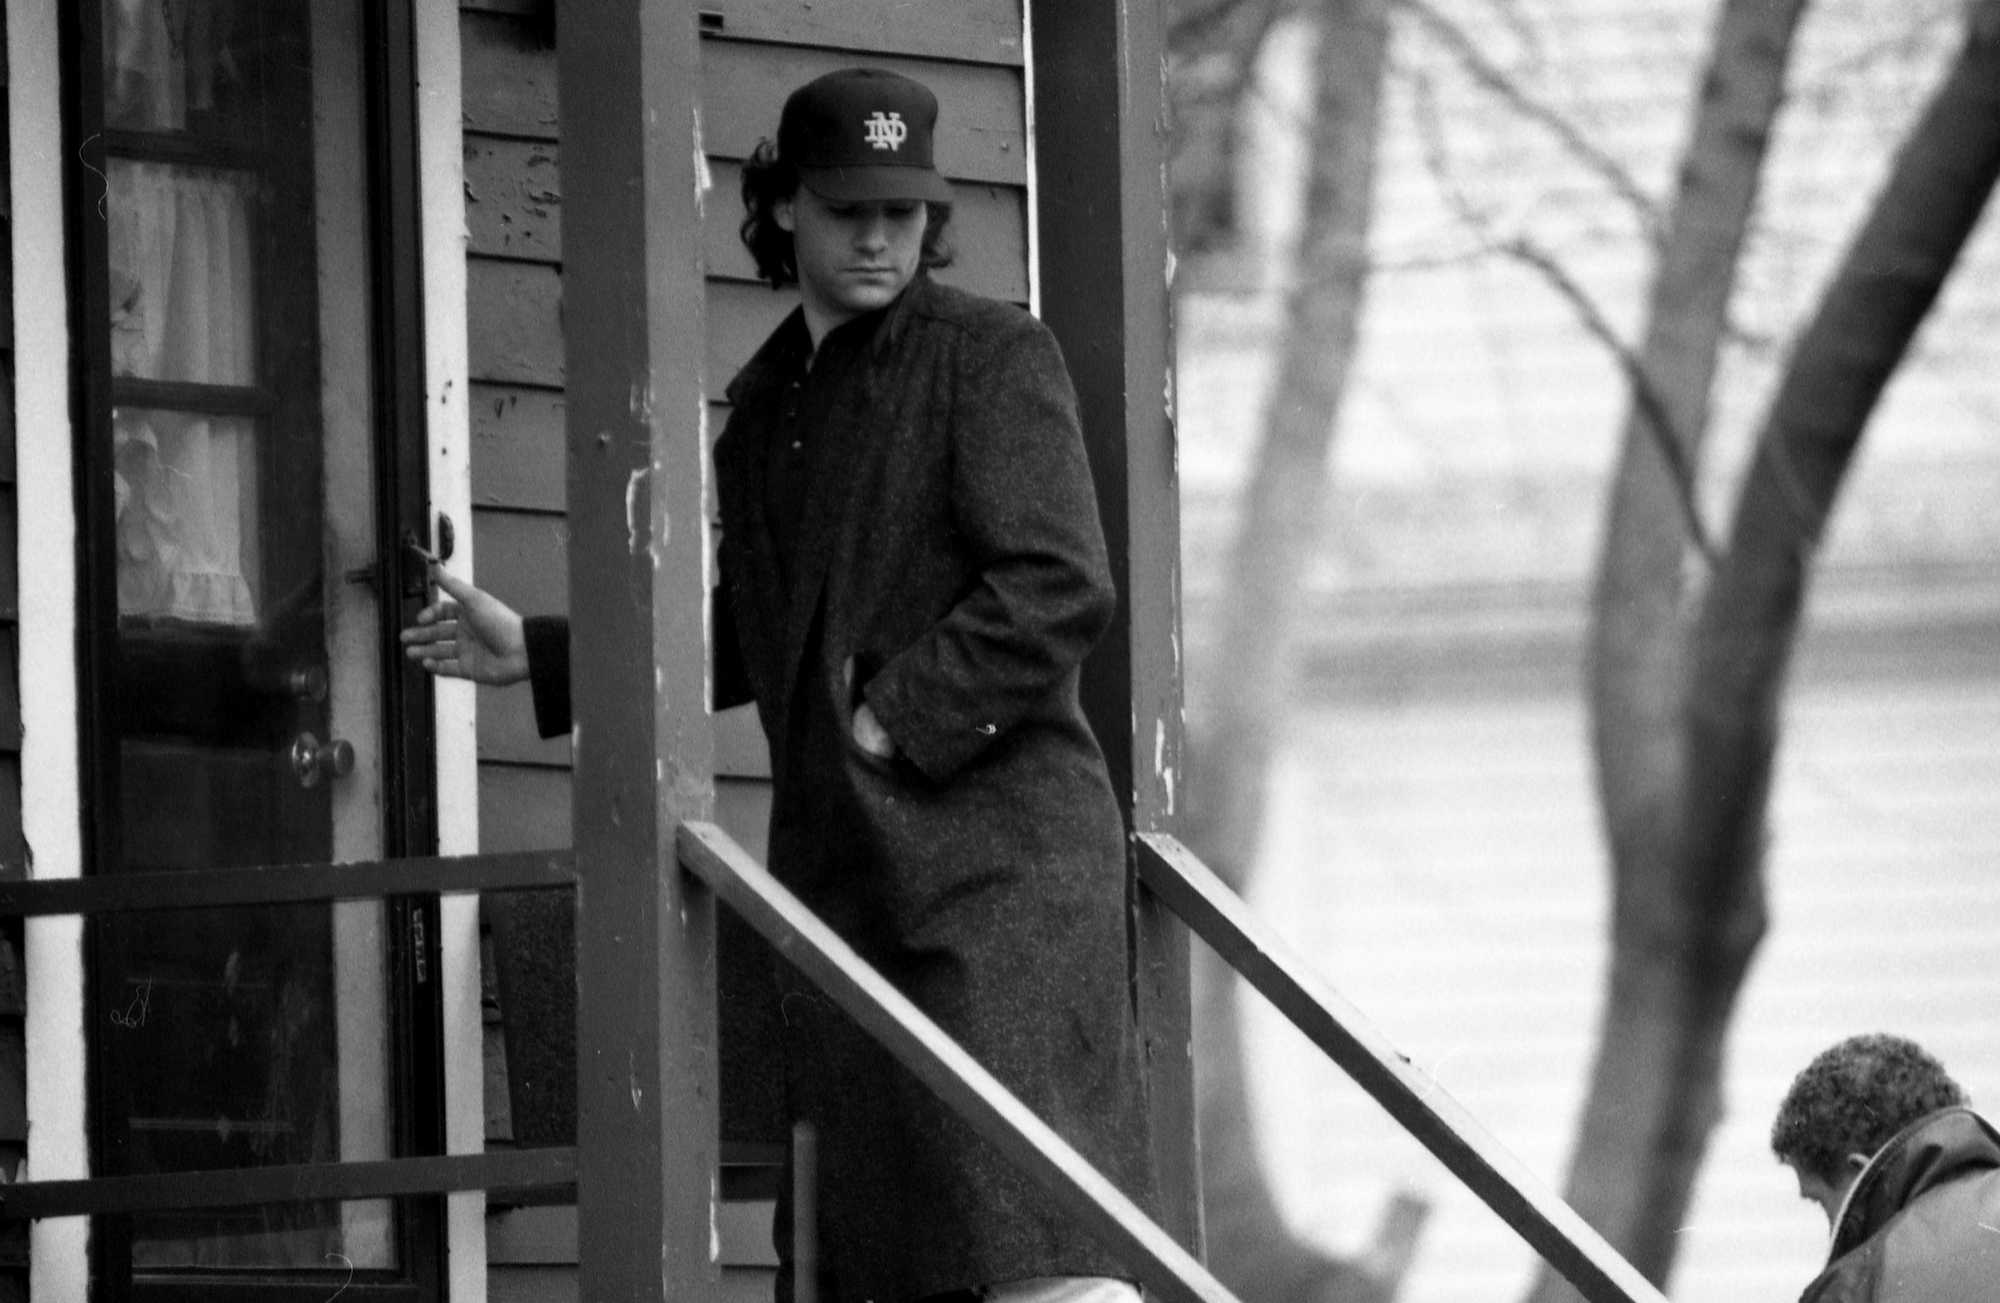 Matthew Stuart arrived at the Stuart family residence on Jan. 11. 1990.